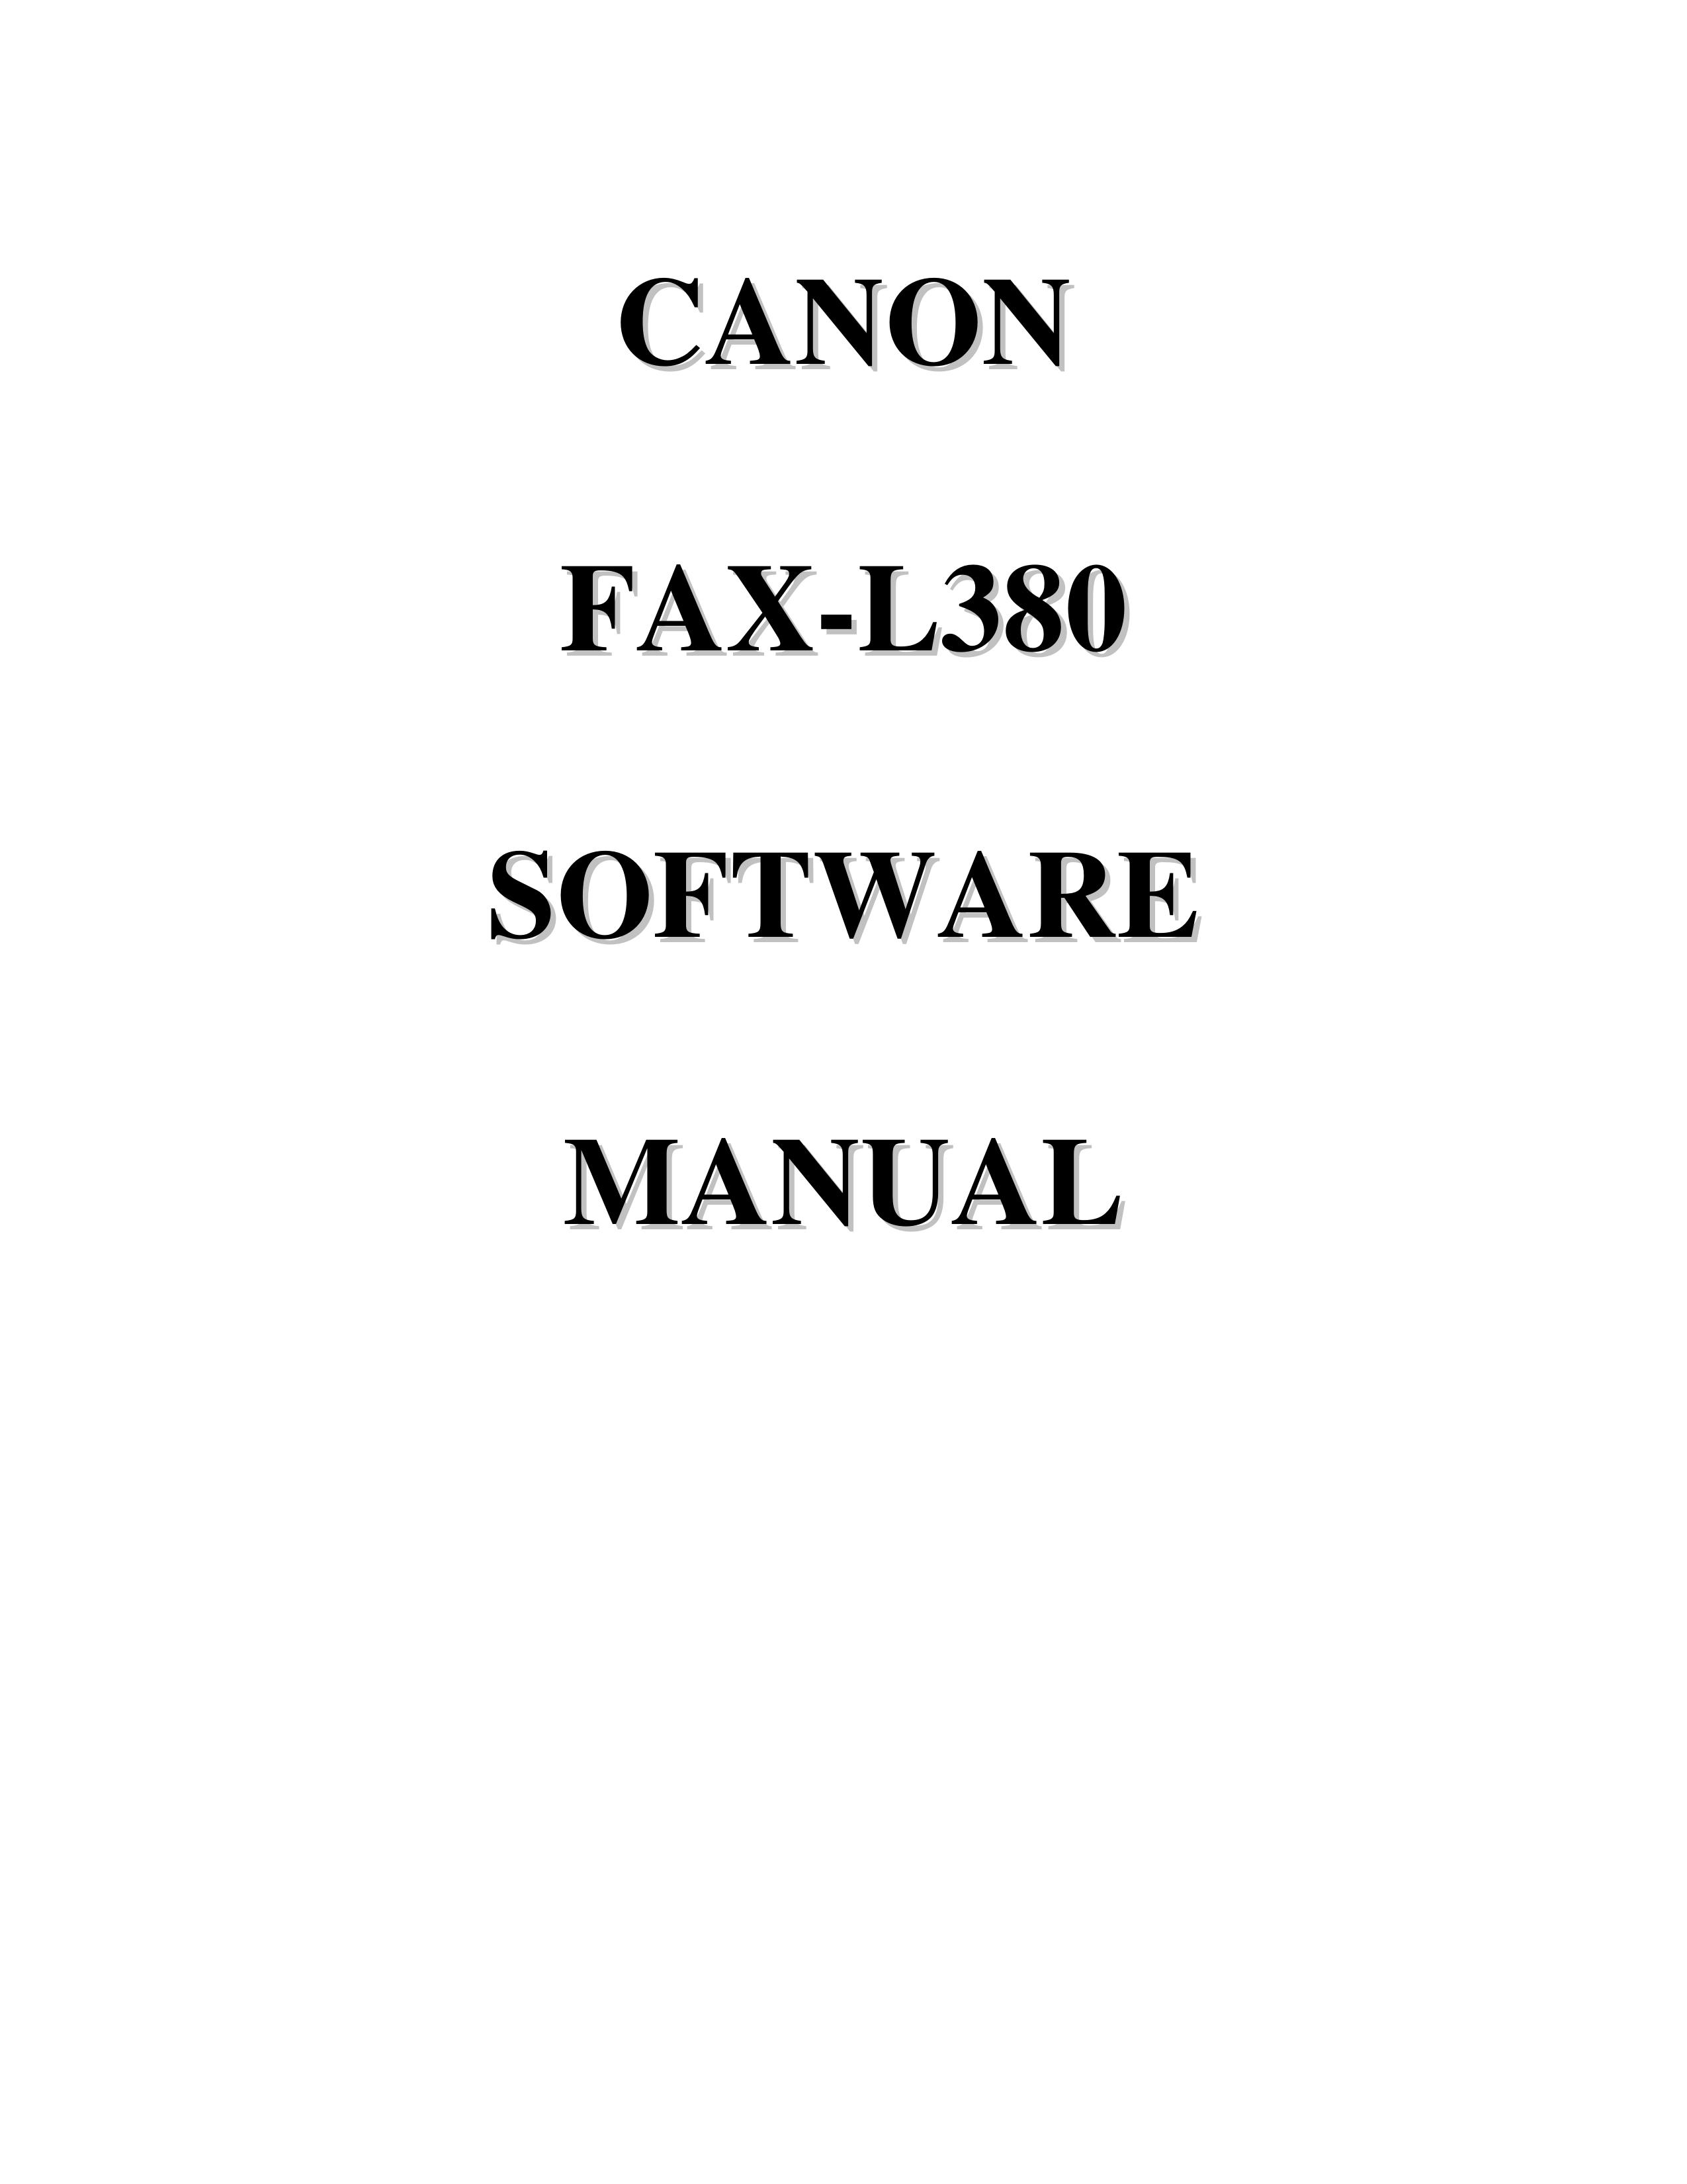 Canon Fax-L380 Photo Printer User Manual